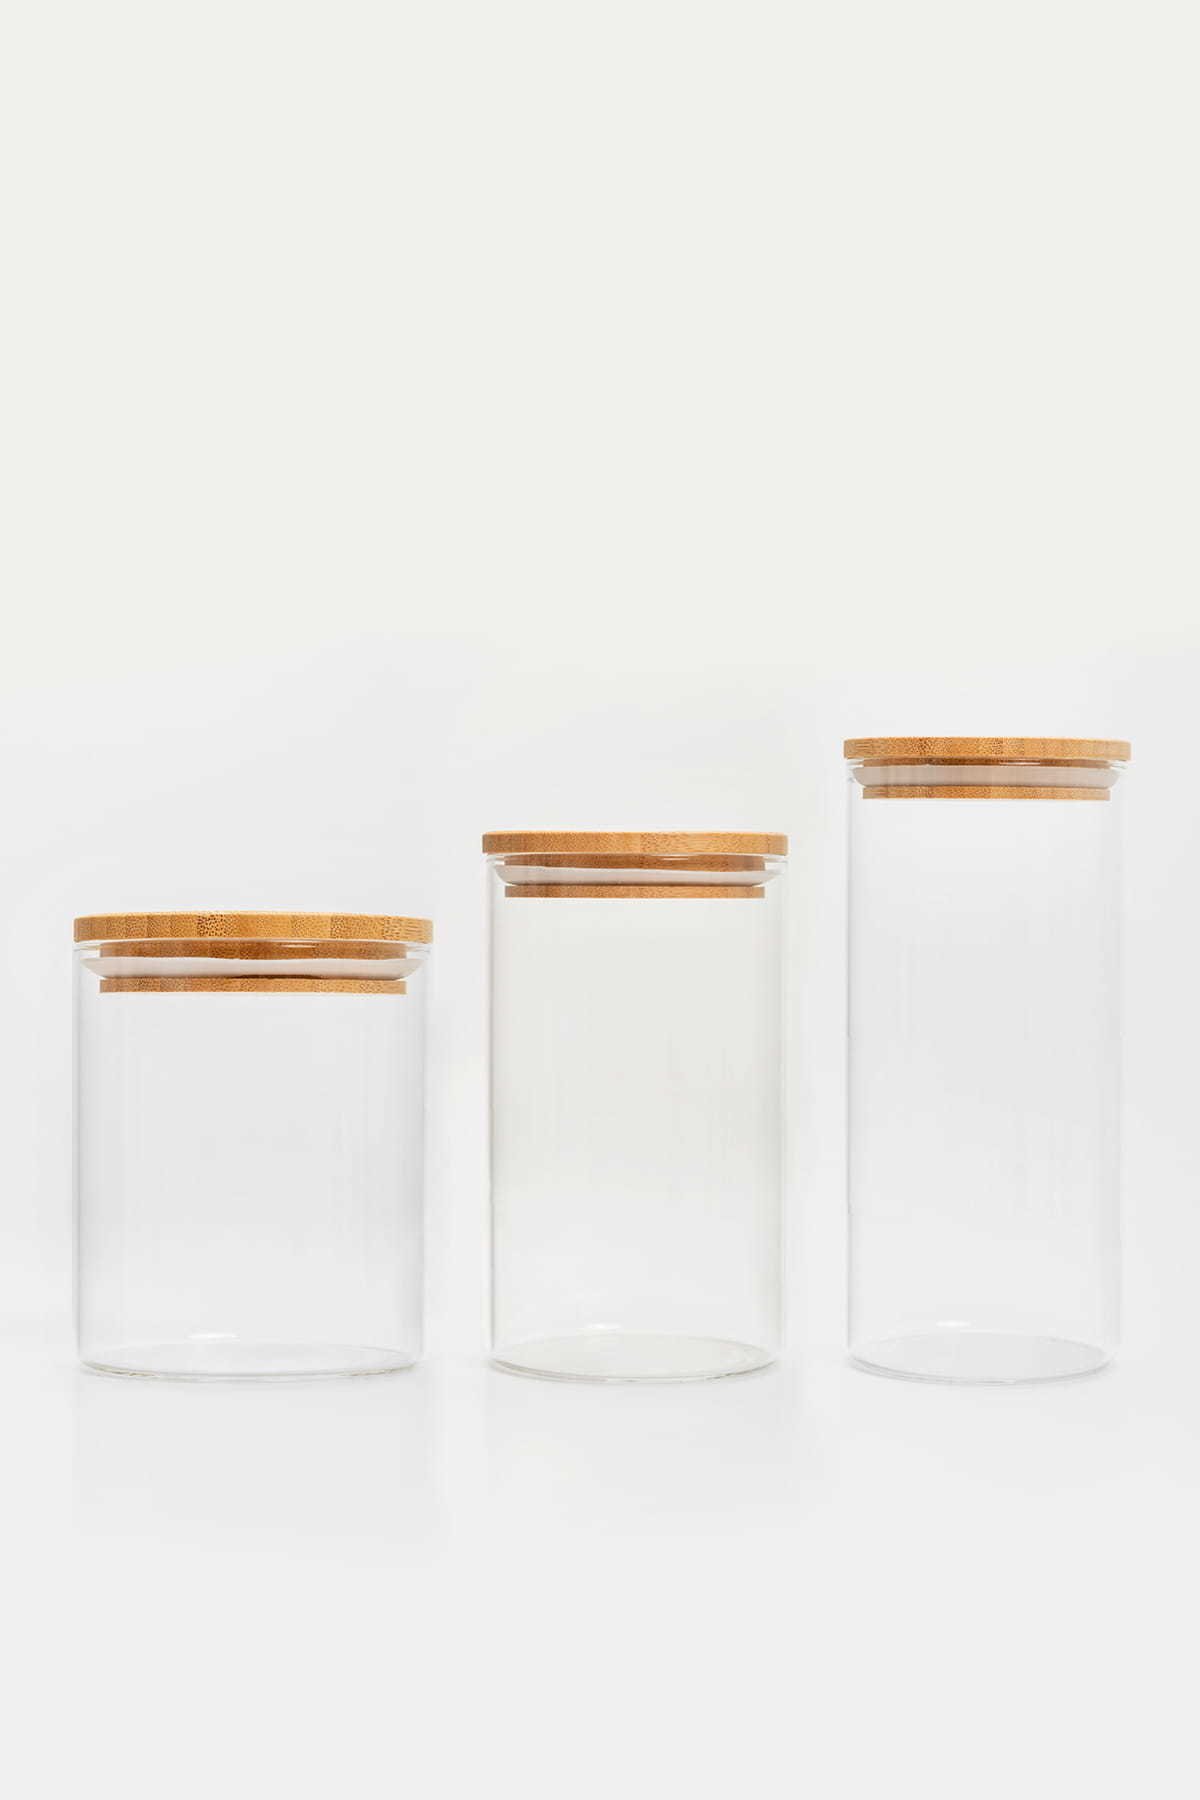 Birių produktų indas MPLco, stiklinis, su bambukiniu dangteliu, 10 x 13 cm - 2